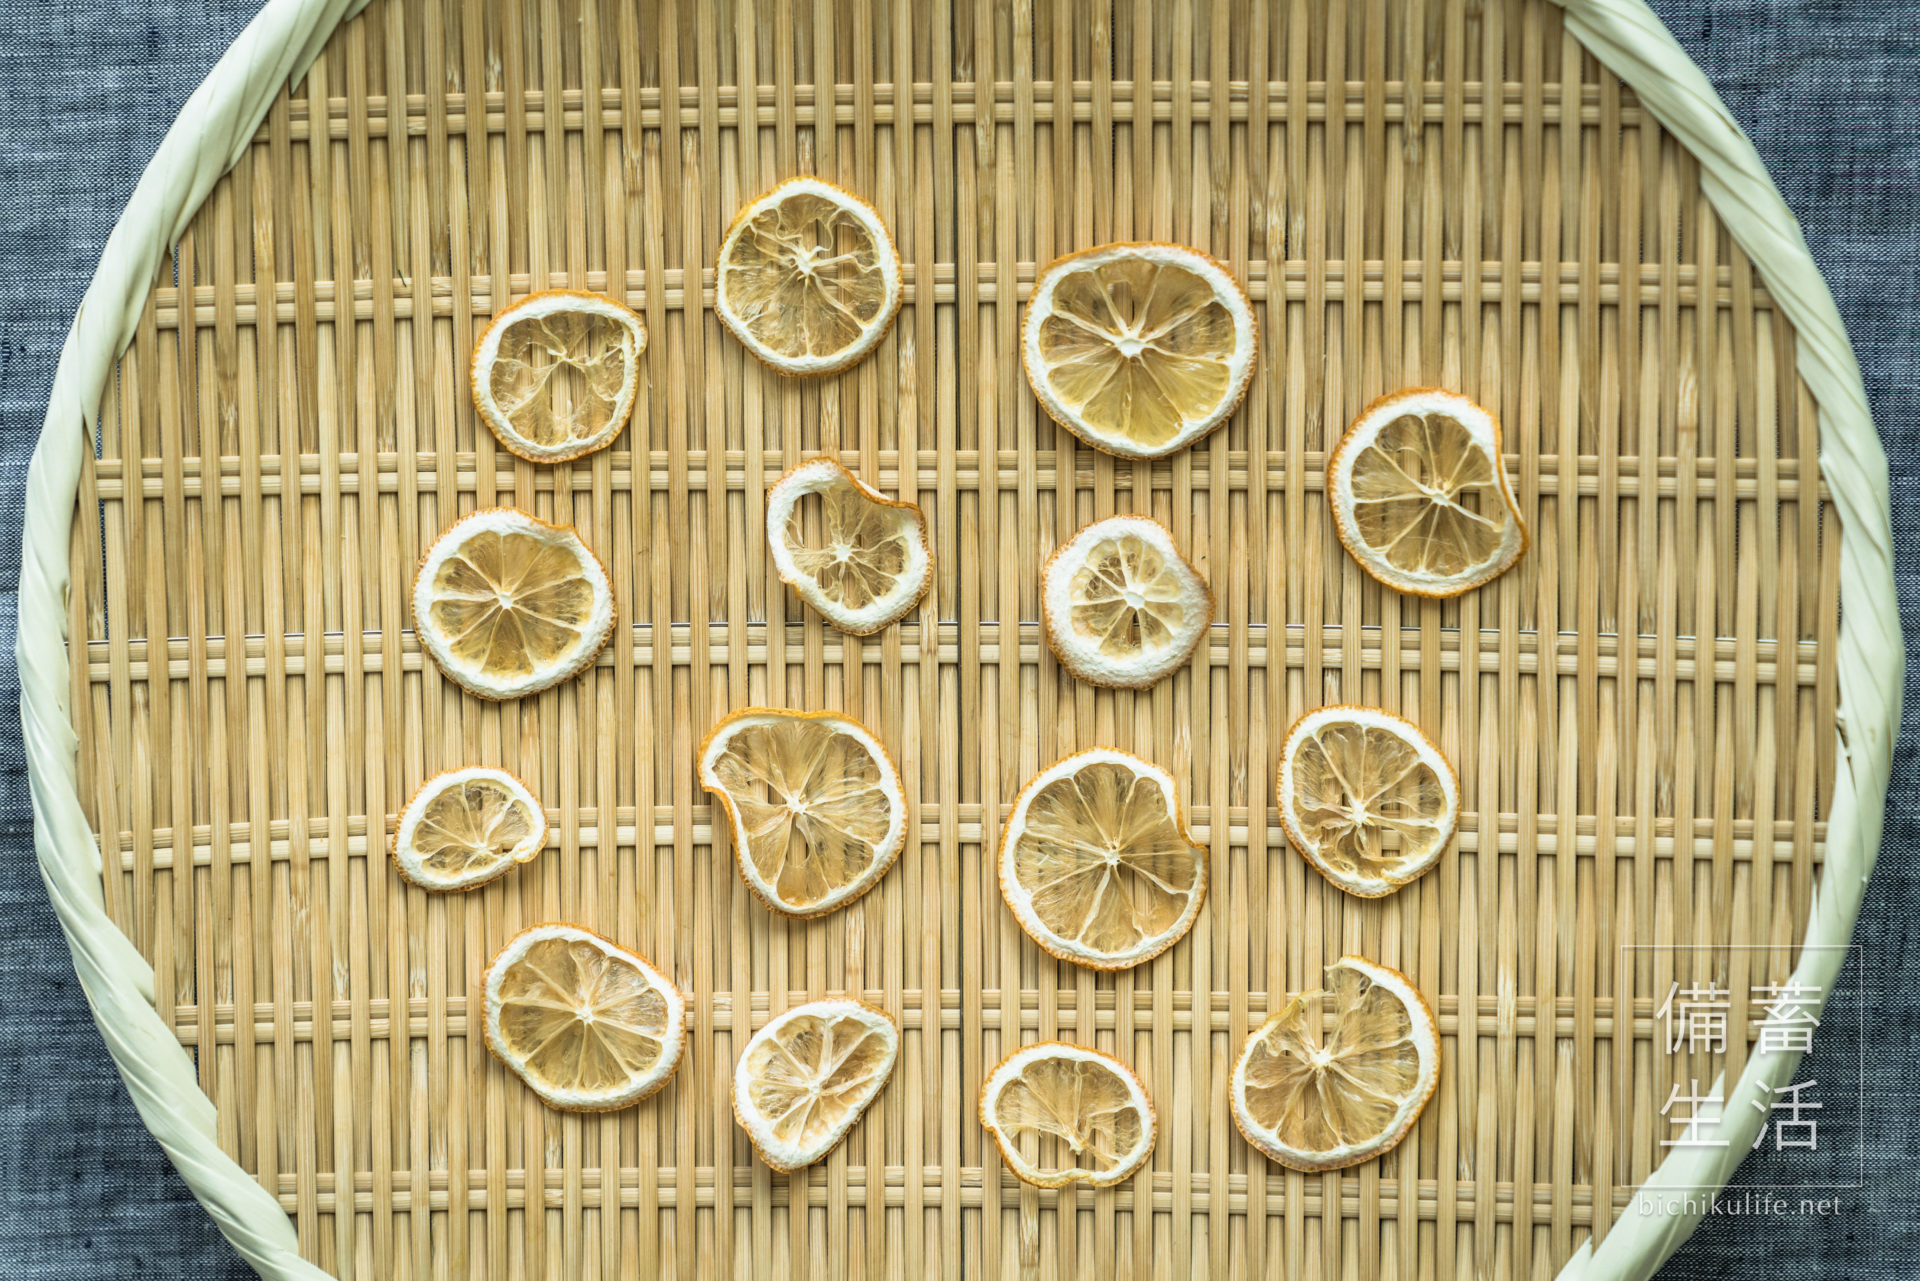 レモン 干し果物づくり｜干しレモンの作り方